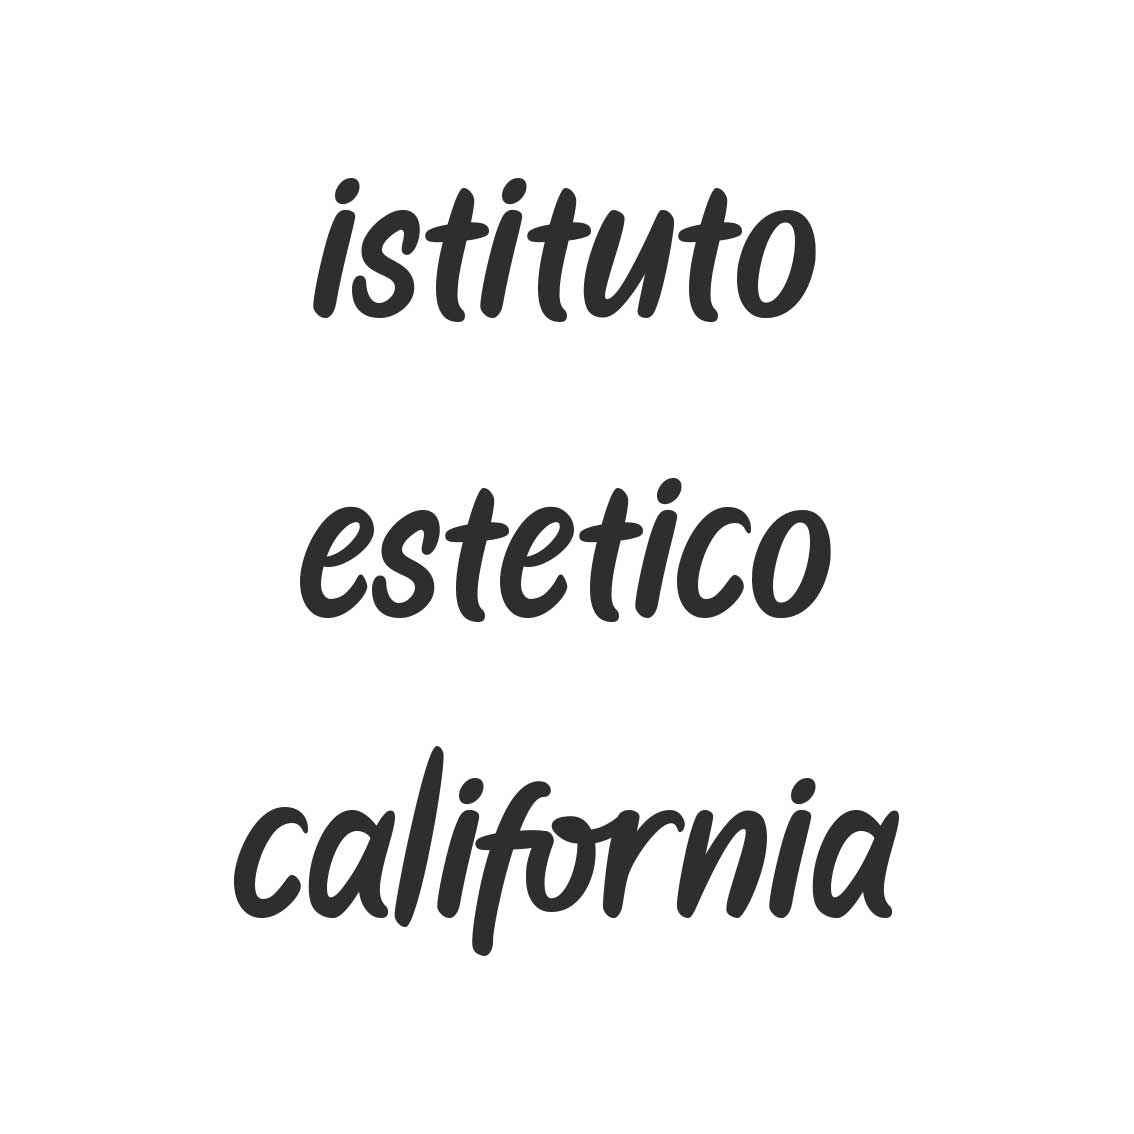 ISTITUTO ESTETICO CALIFORNIA